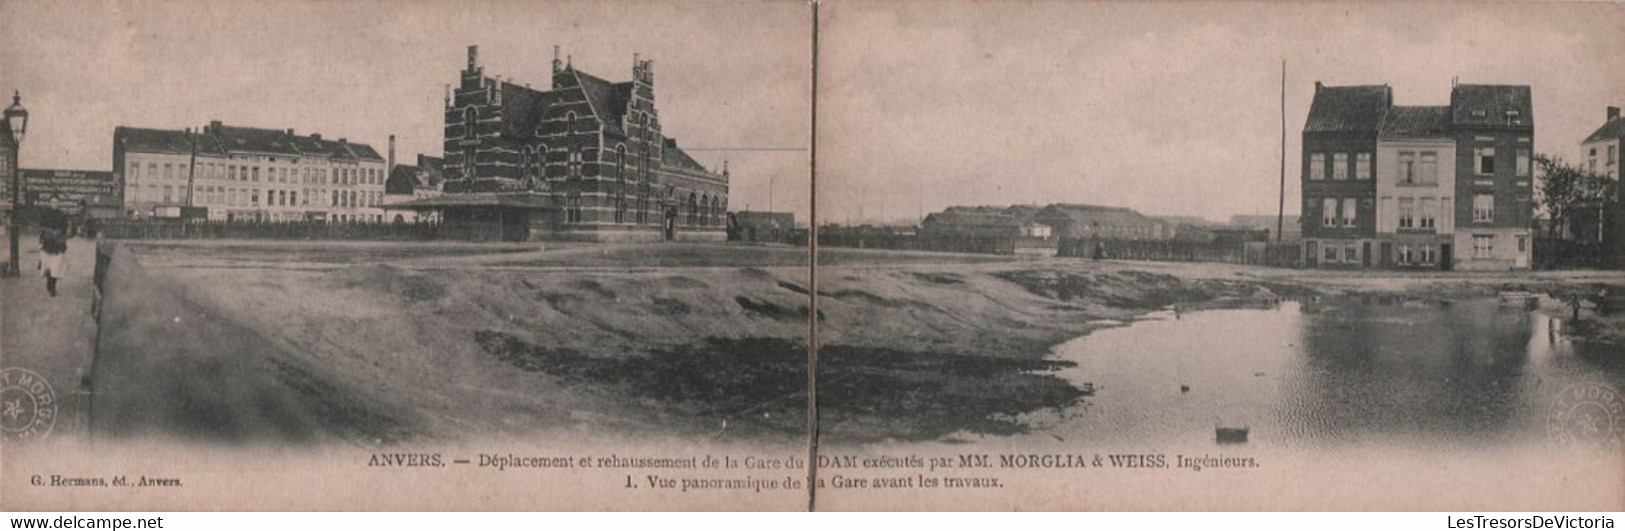 ANVERS - lot de 27 cpa deplacement et rehaussement de la gare du DAM - hermans ed - carte postale ancienne